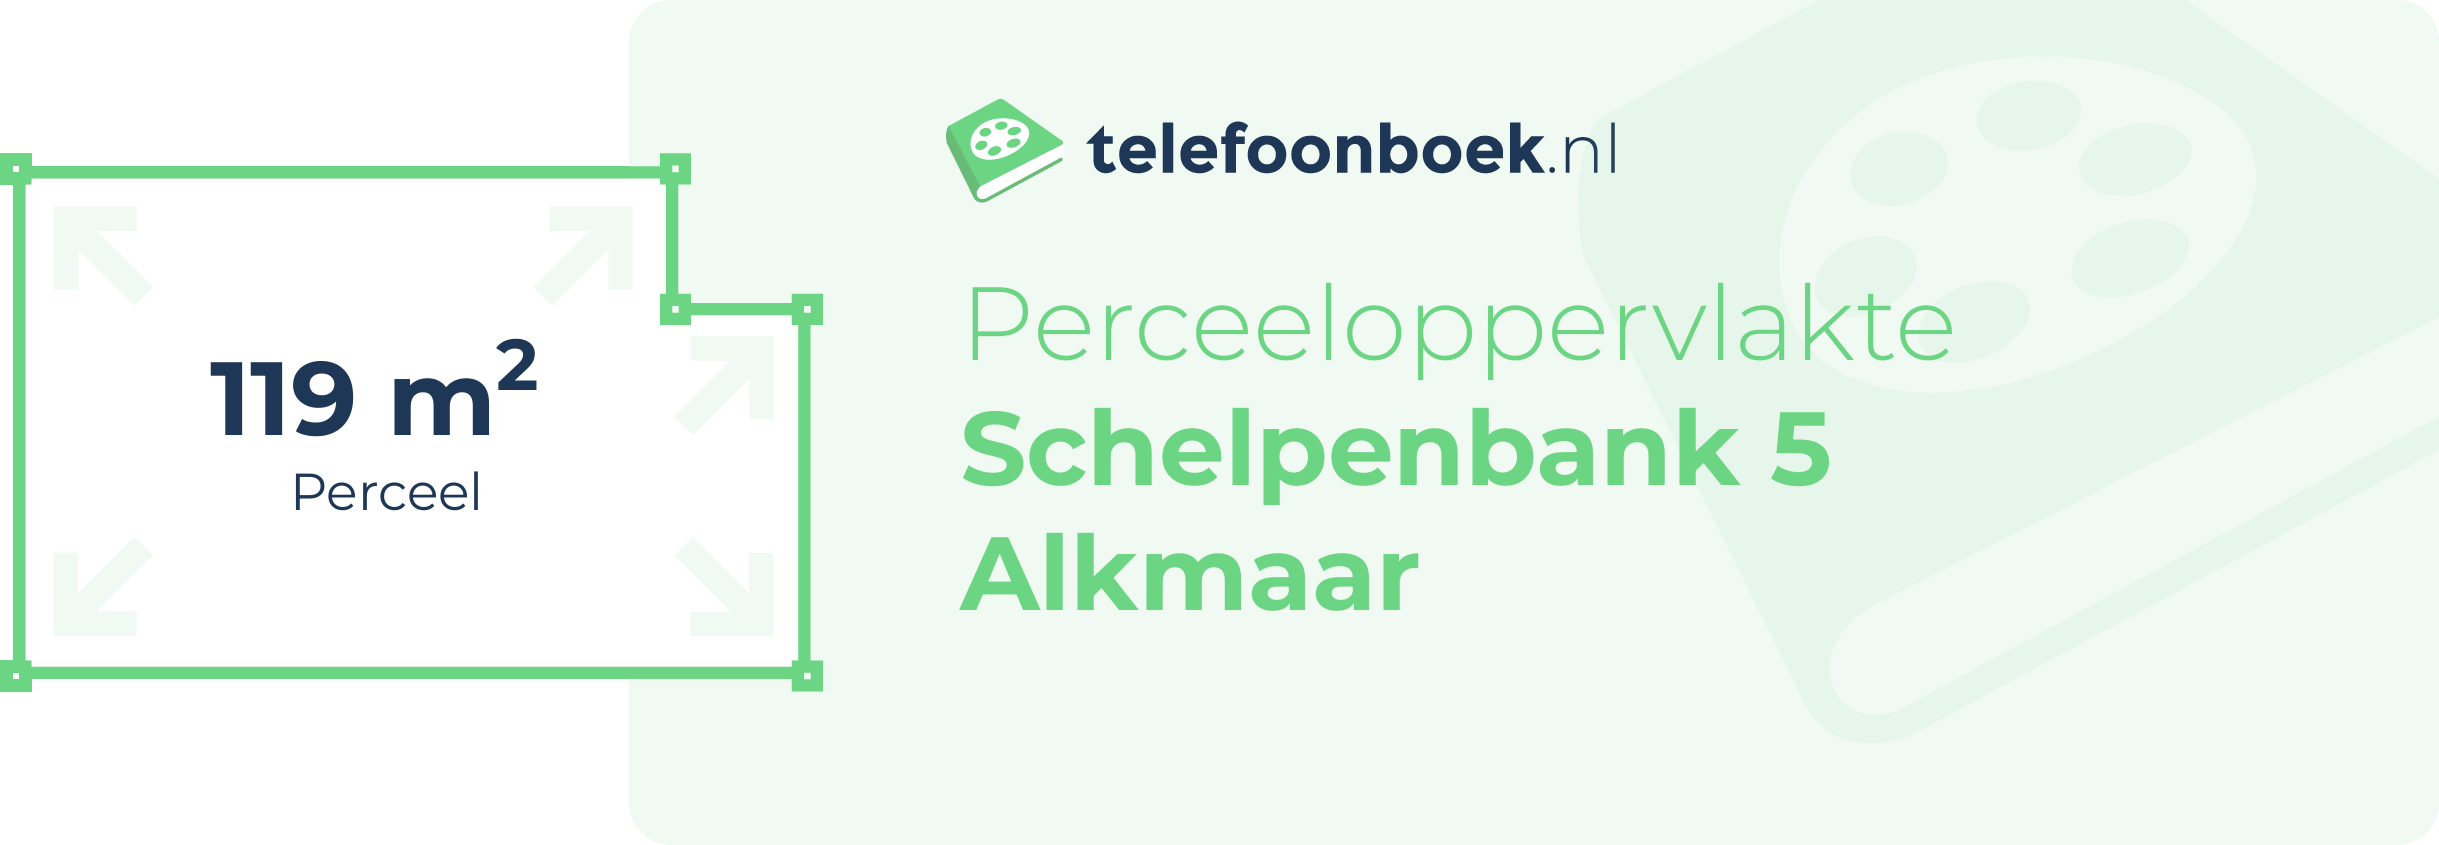 Perceeloppervlakte Schelpenbank 5 Alkmaar